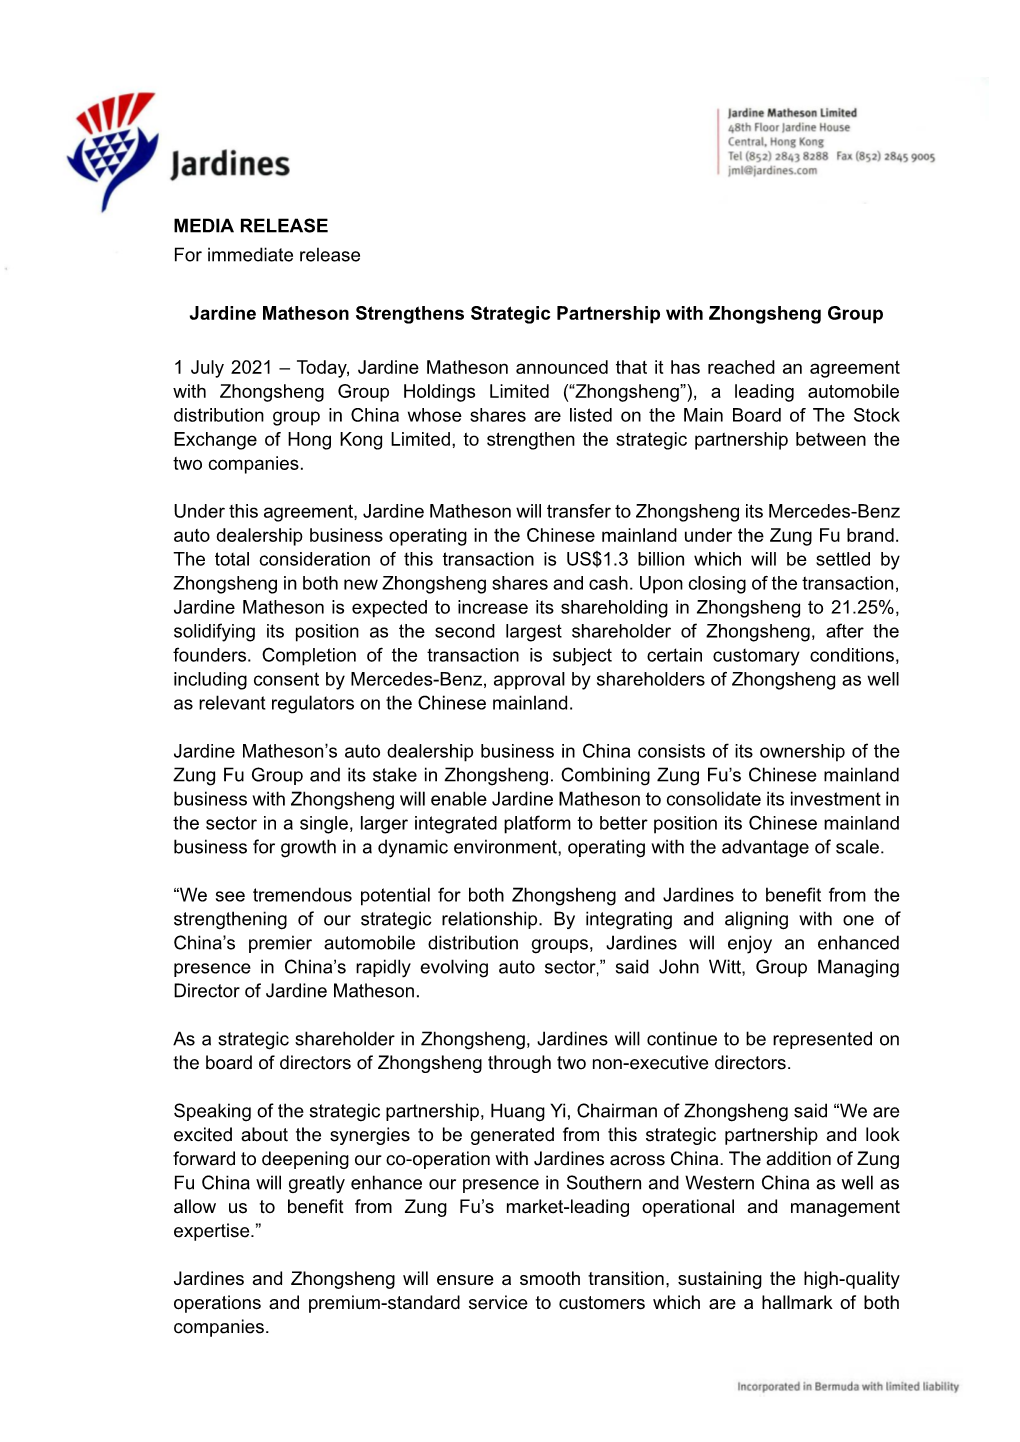 Jardine Matheson Strengthens Strategic Partnership with Zhongsheng Group